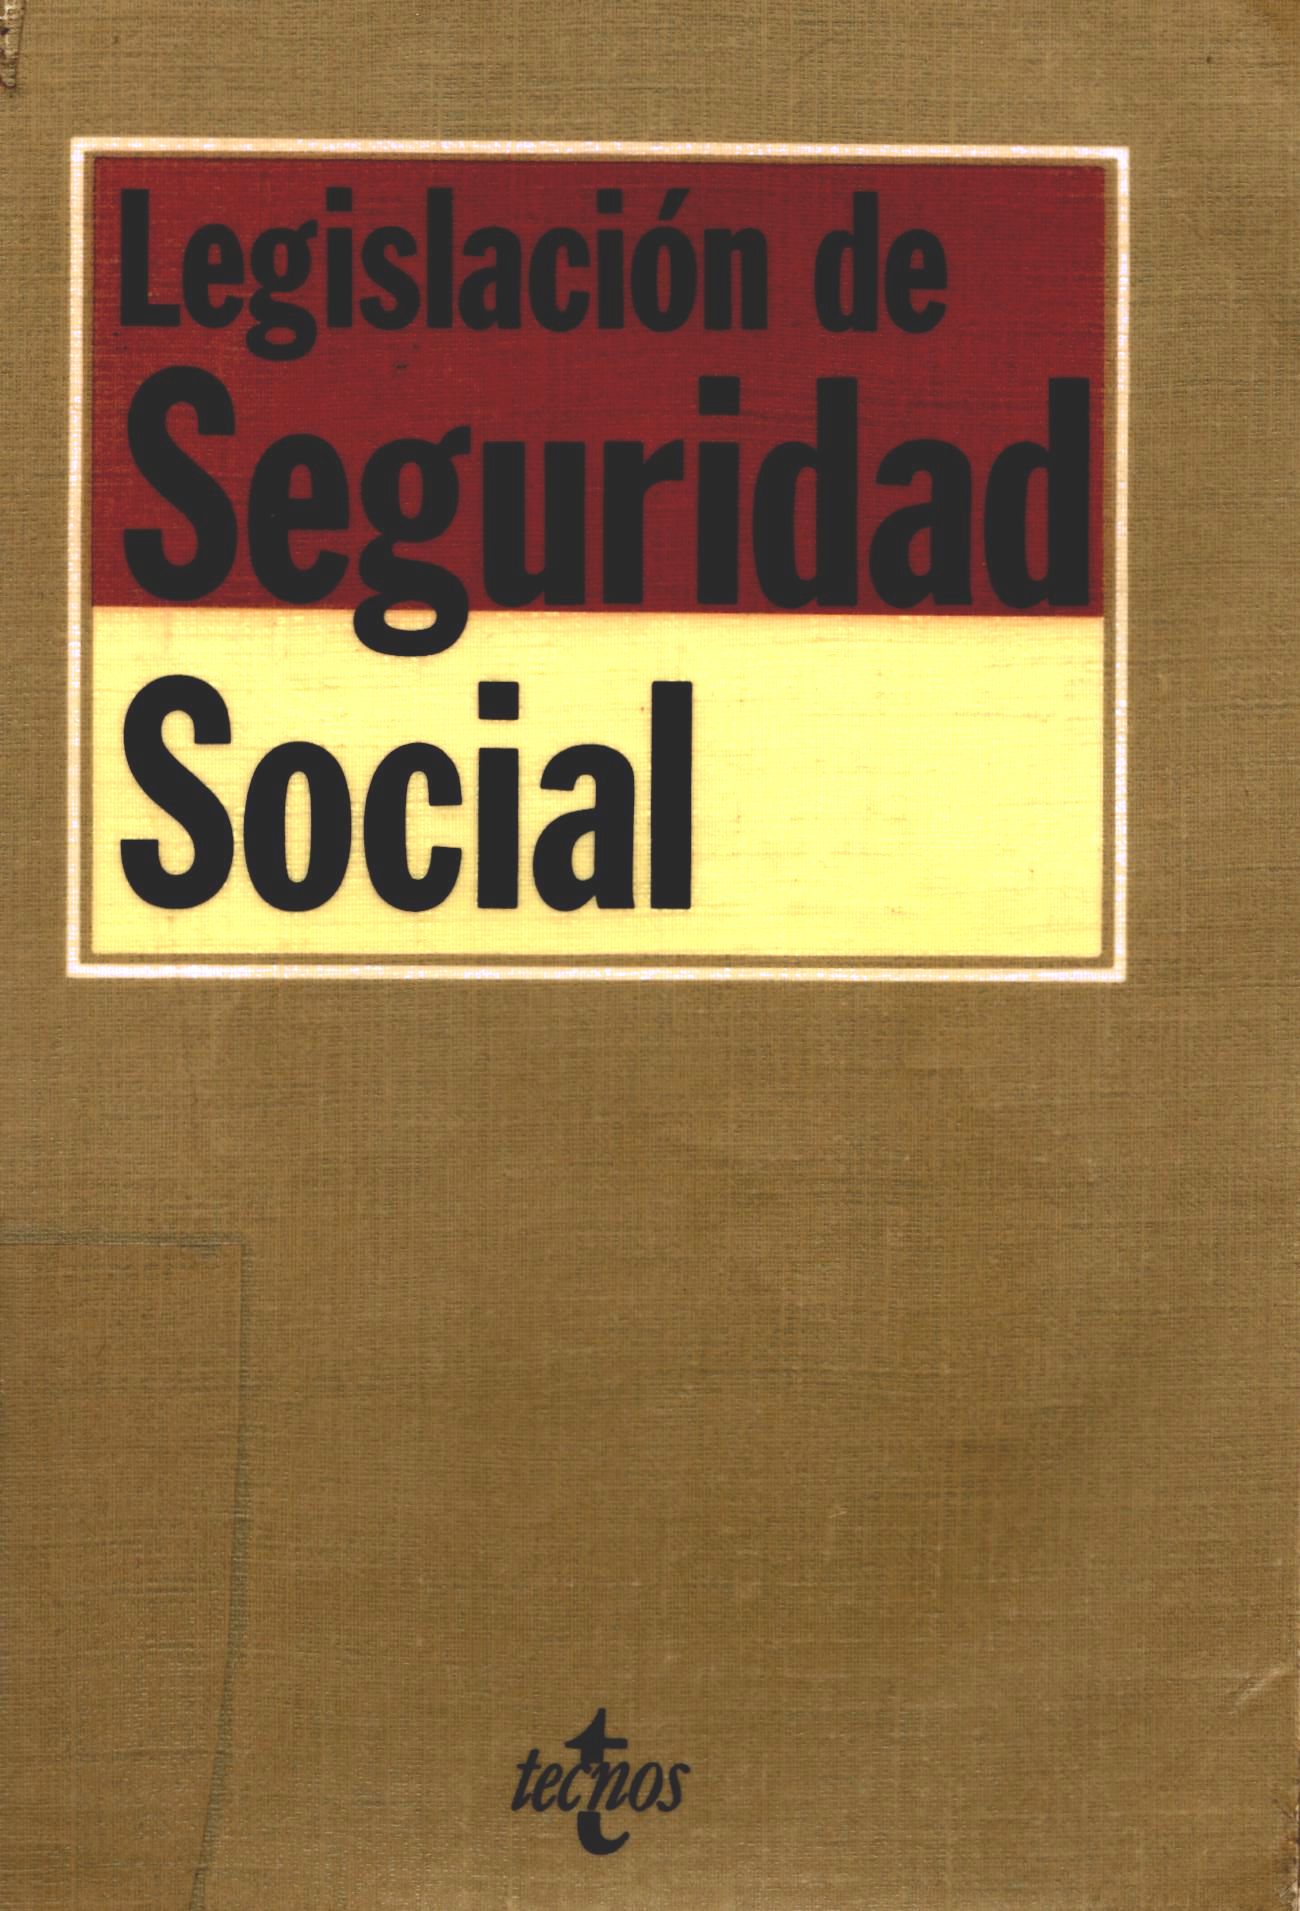 Imagen de portada del libro Legislación de Seguridad Social